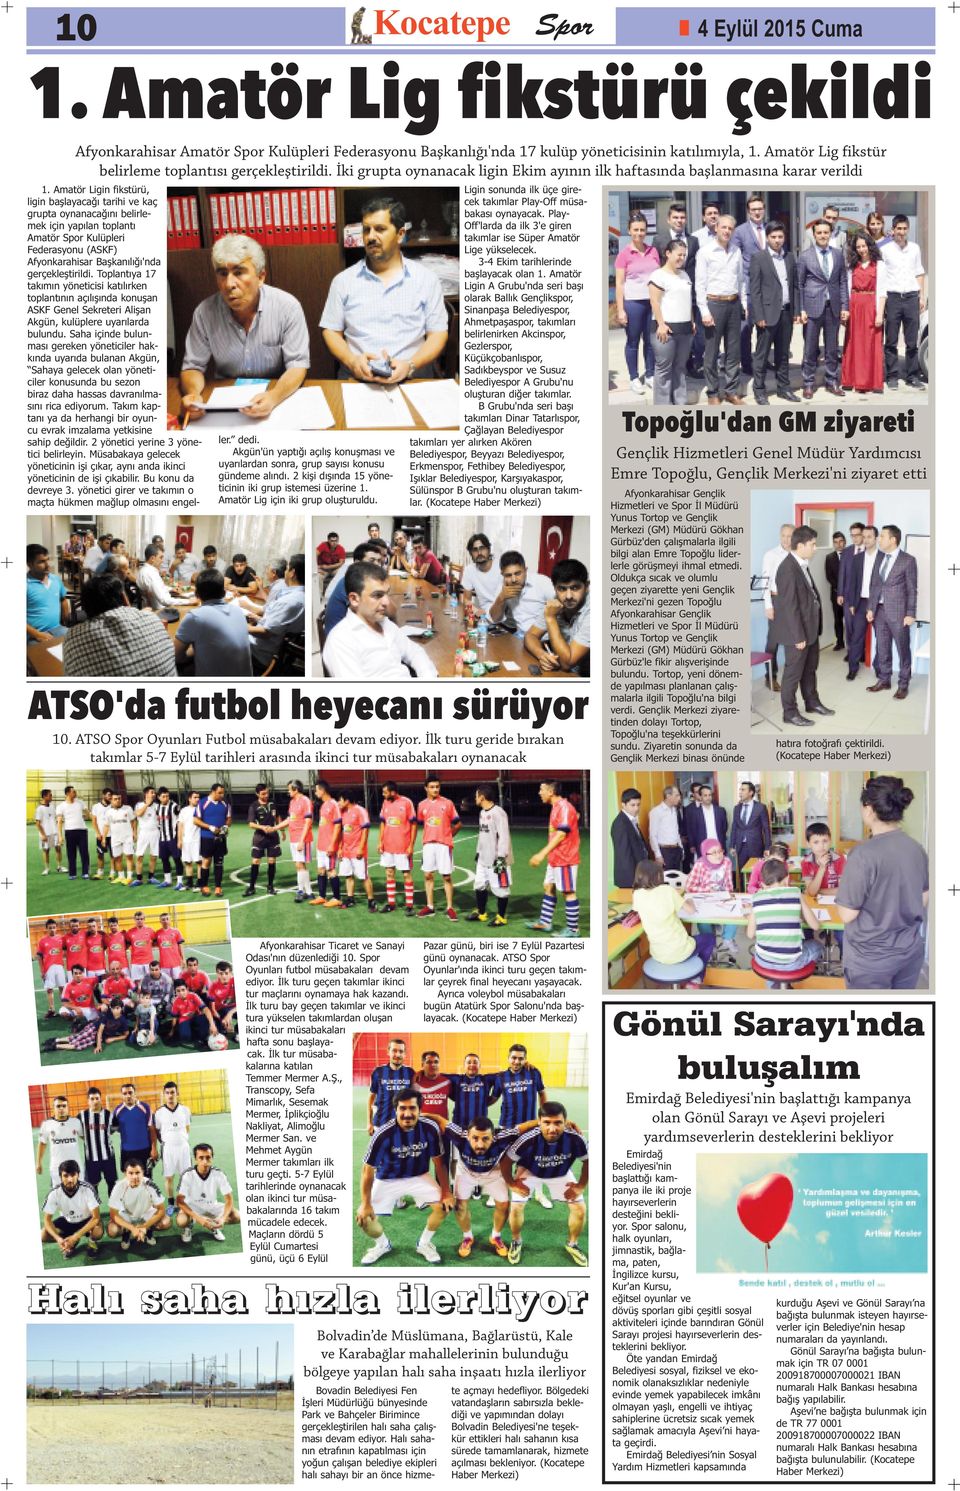 Amatör Ligin fikstürü, ligin başlayacağı tarihi ve kaç grupta oynanacağını belirlemek için yapılan toplantı Amatör Spor Kulüpleri Federasyonu (ASKF) Afyonkarahisar Başkanılığı'nda gerçekleştirildi.